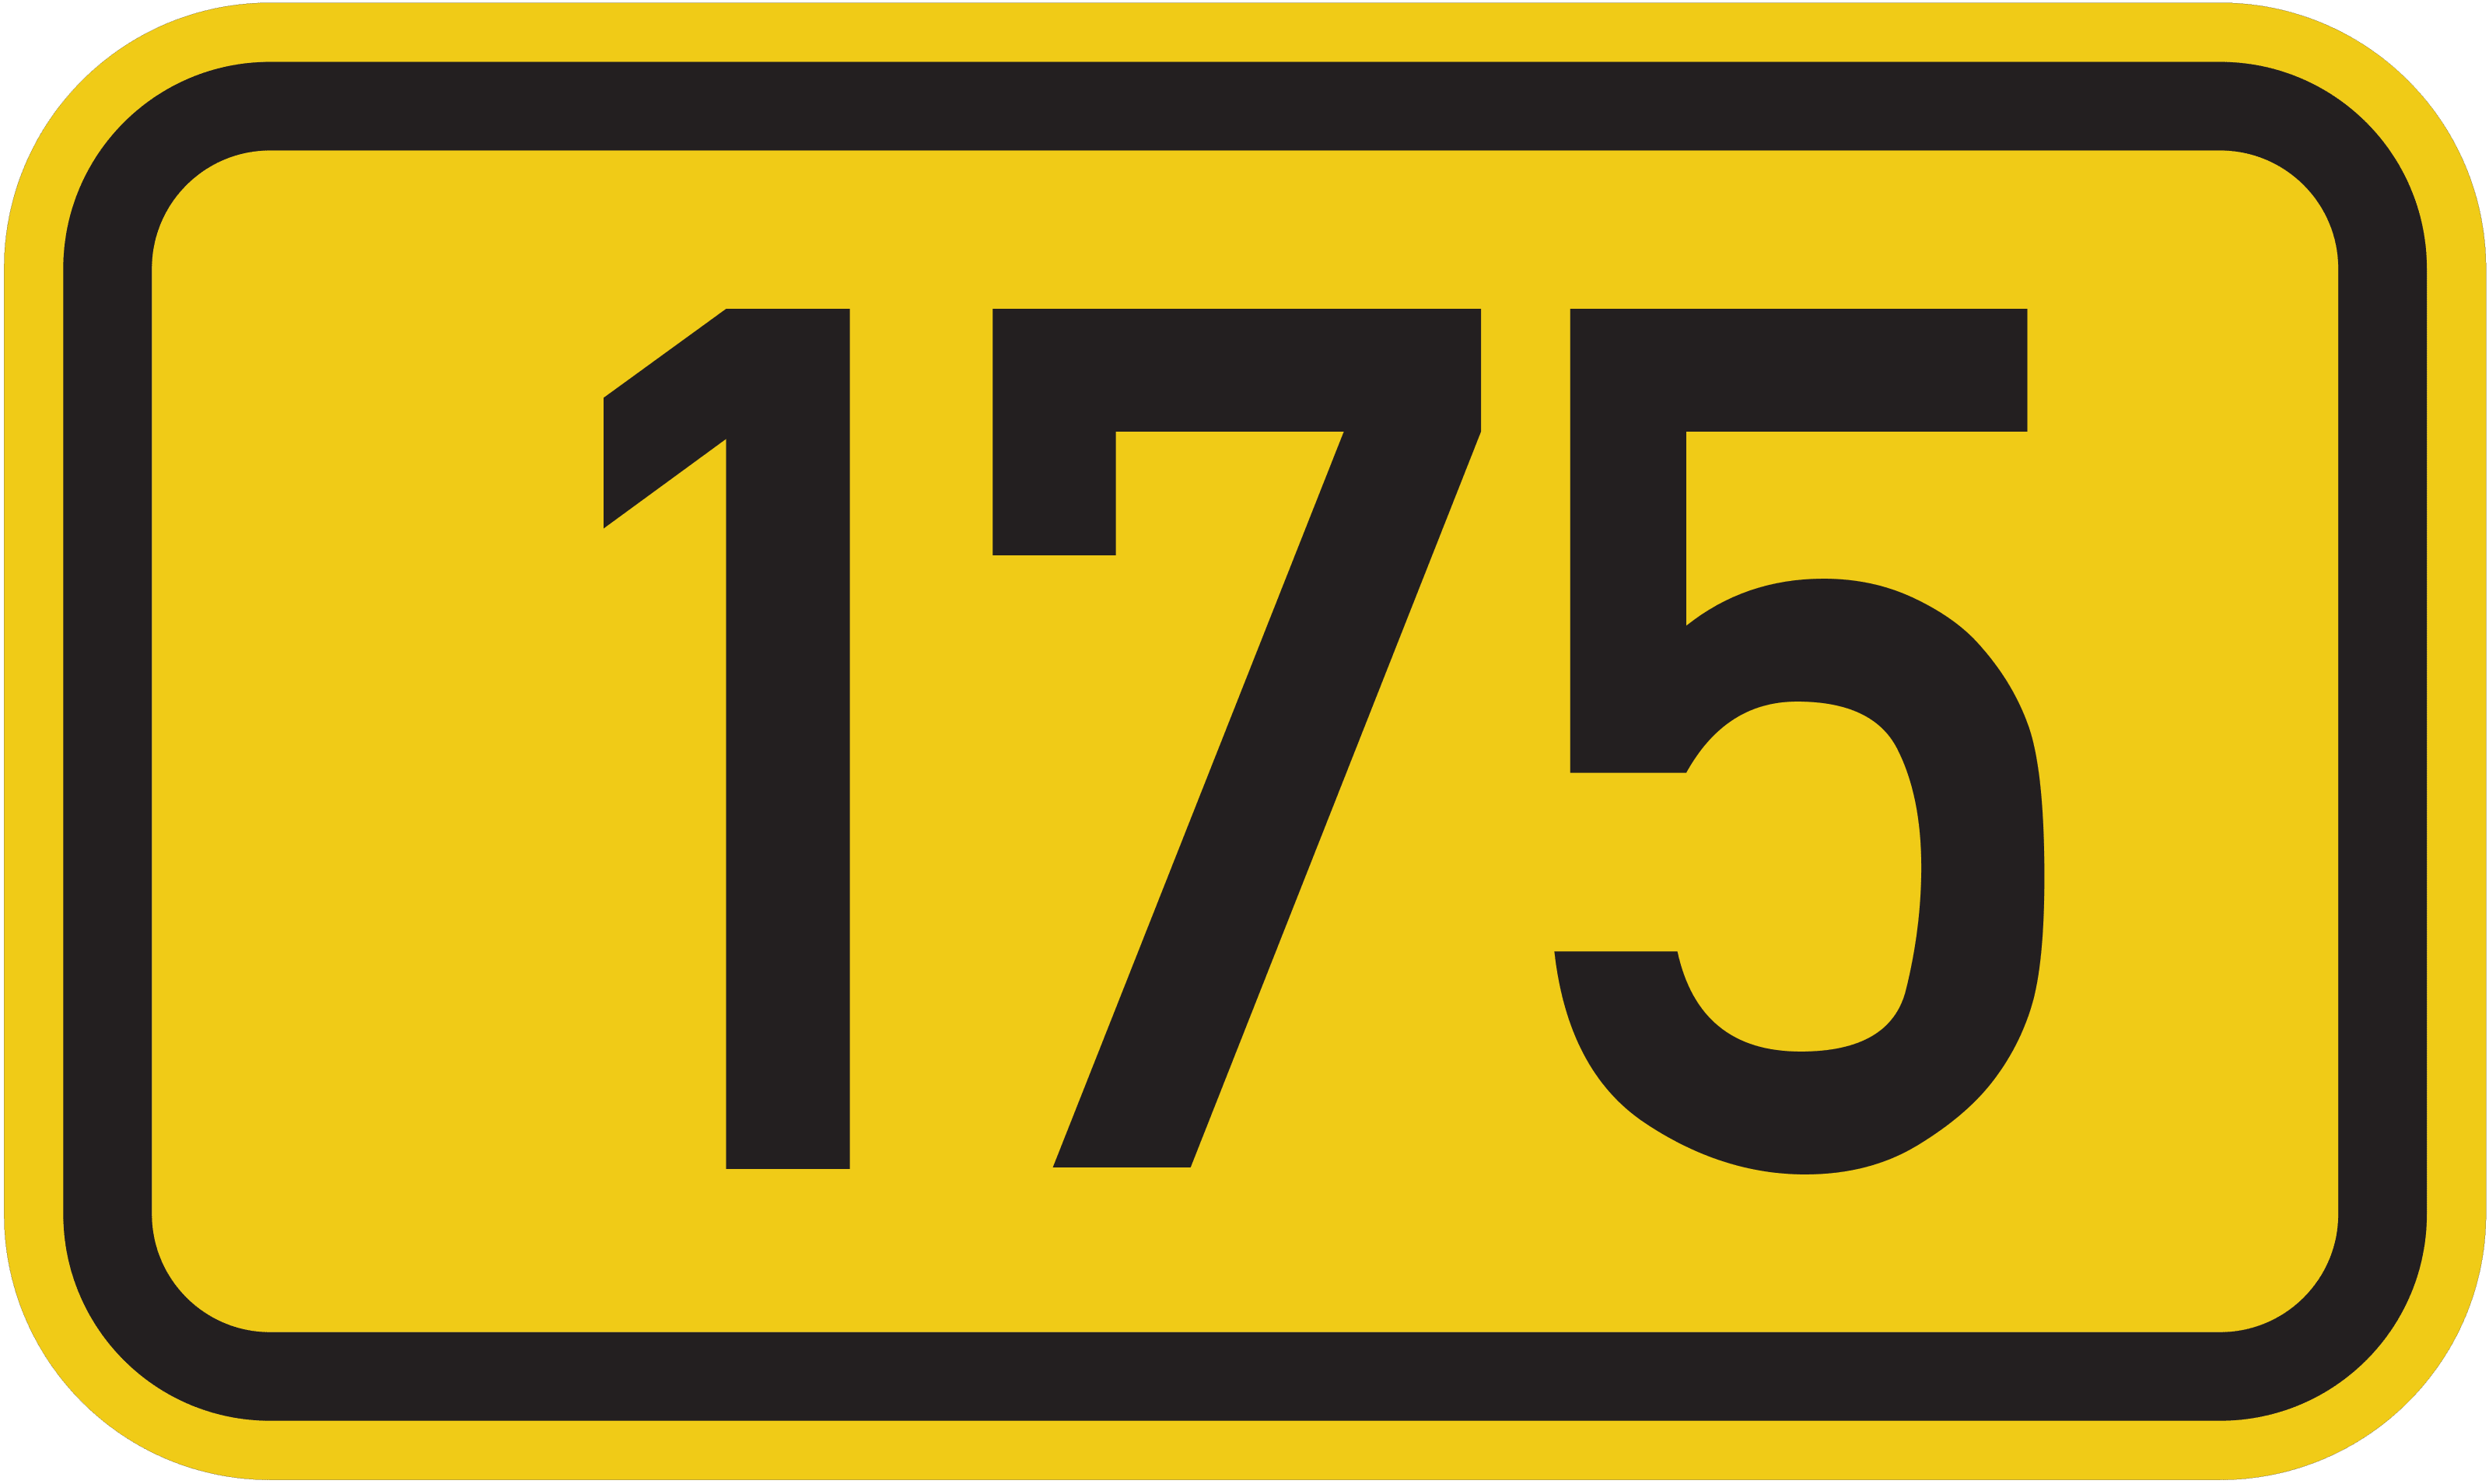 Bundesstraße B 175